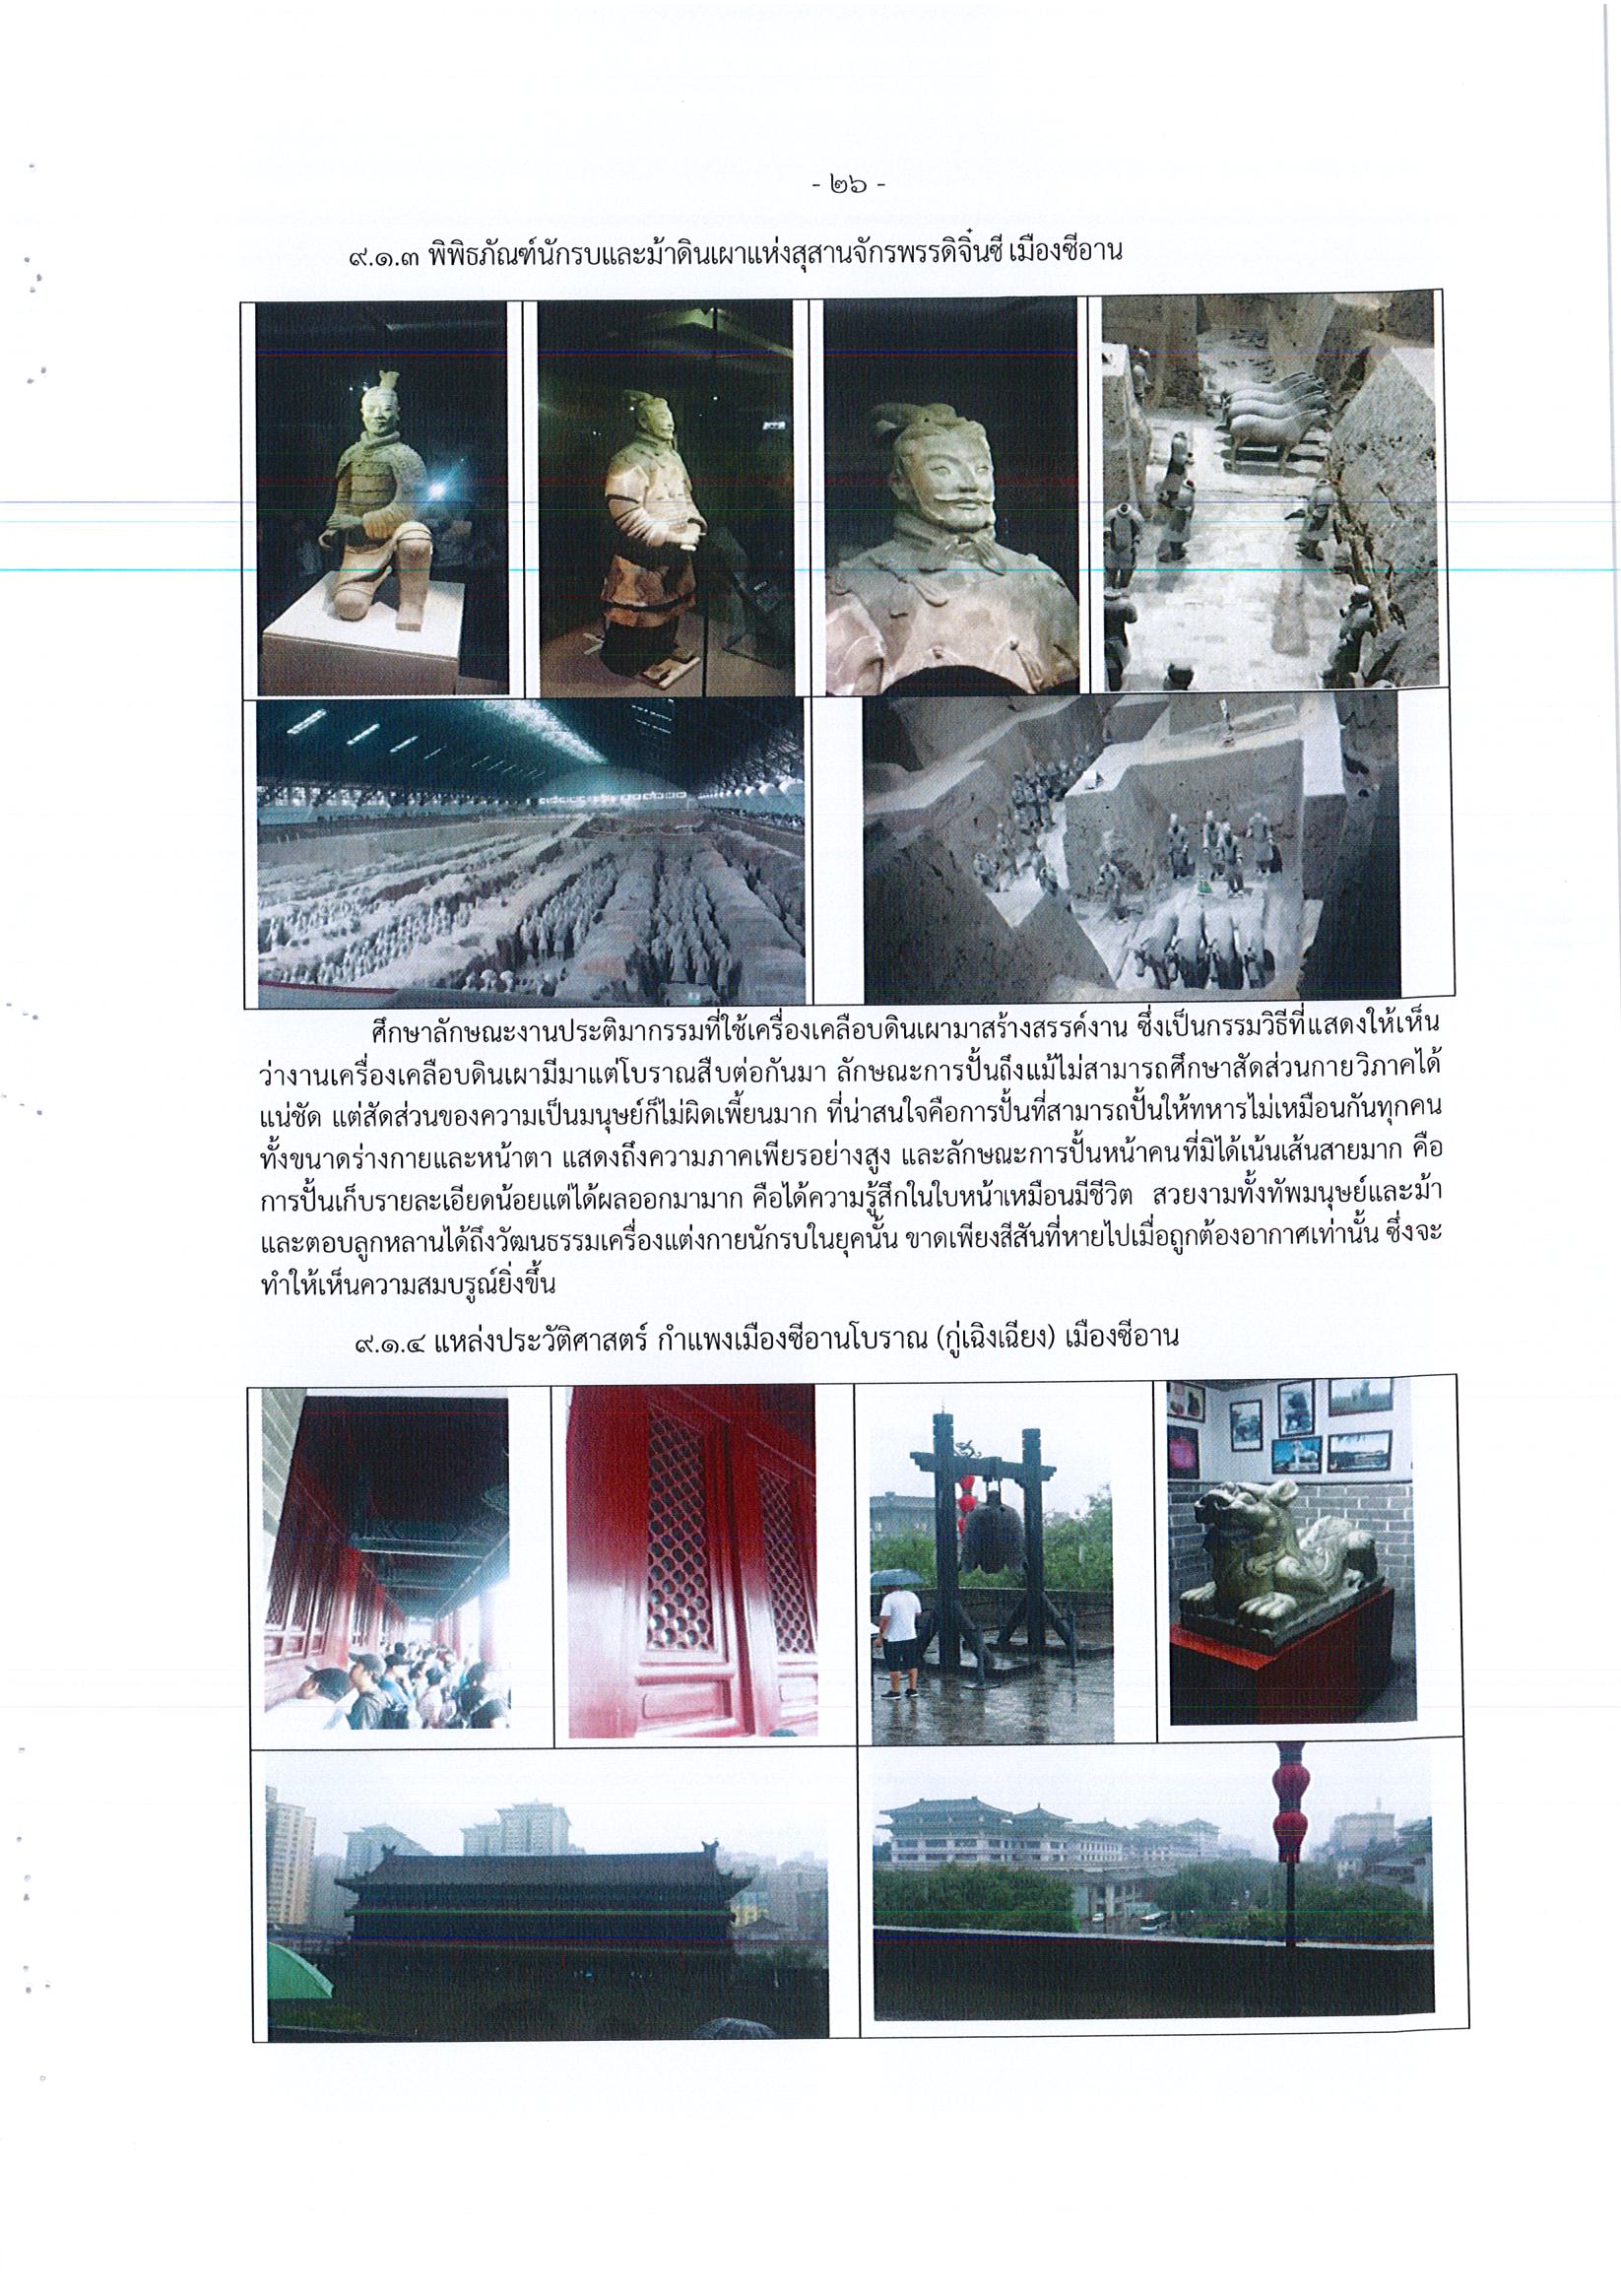 รายงานการเดินทางไปราชการ ณ สาธารณรัฐประชาชนจีน ระหว่างวันที่ 1 – 5 กรกฎาคม 2561 โครงการสำรวจแหล่งความรู้ด้านงานศิลปกรรม สถาปัตยกรรม วิศวกรรม พิพิธภัณฑ์และการอนุรักษ์ ณ แหล่งมรดกโลกเมืองซีอาน